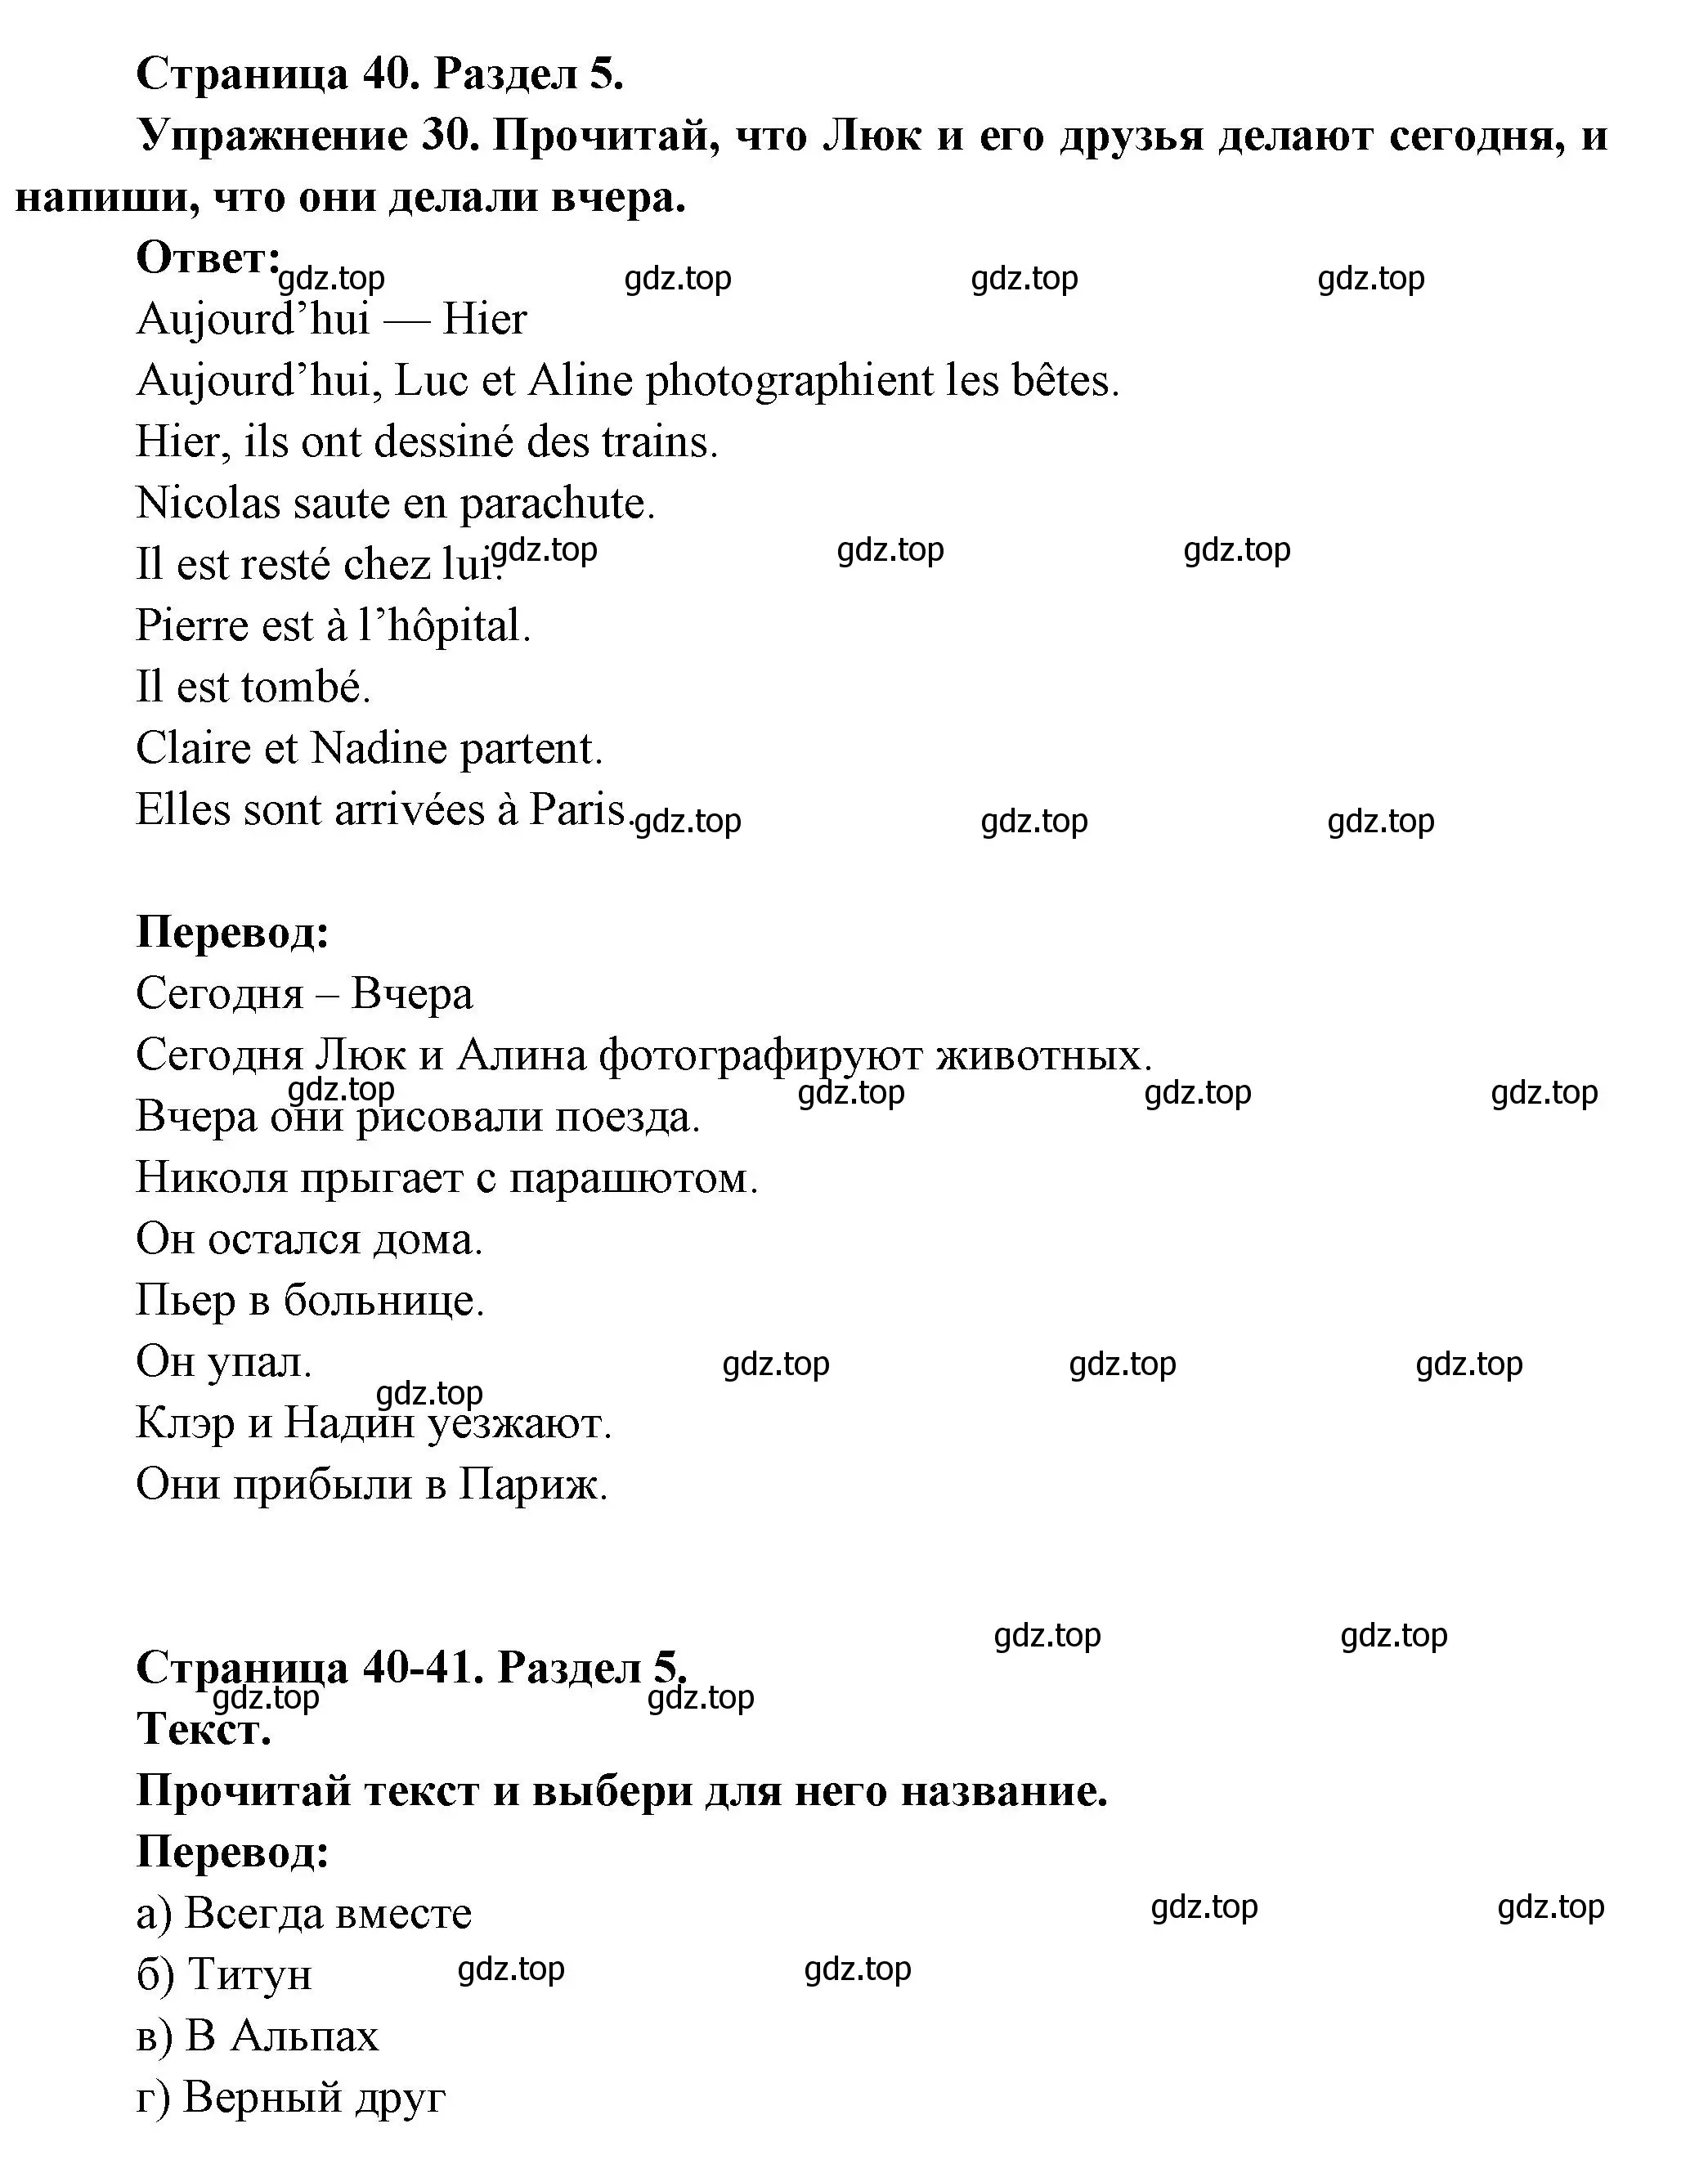 Решение номер 30 (страница 40) гдз по французскому языку 5 класс Береговская, Белосельская, учебник 2 часть